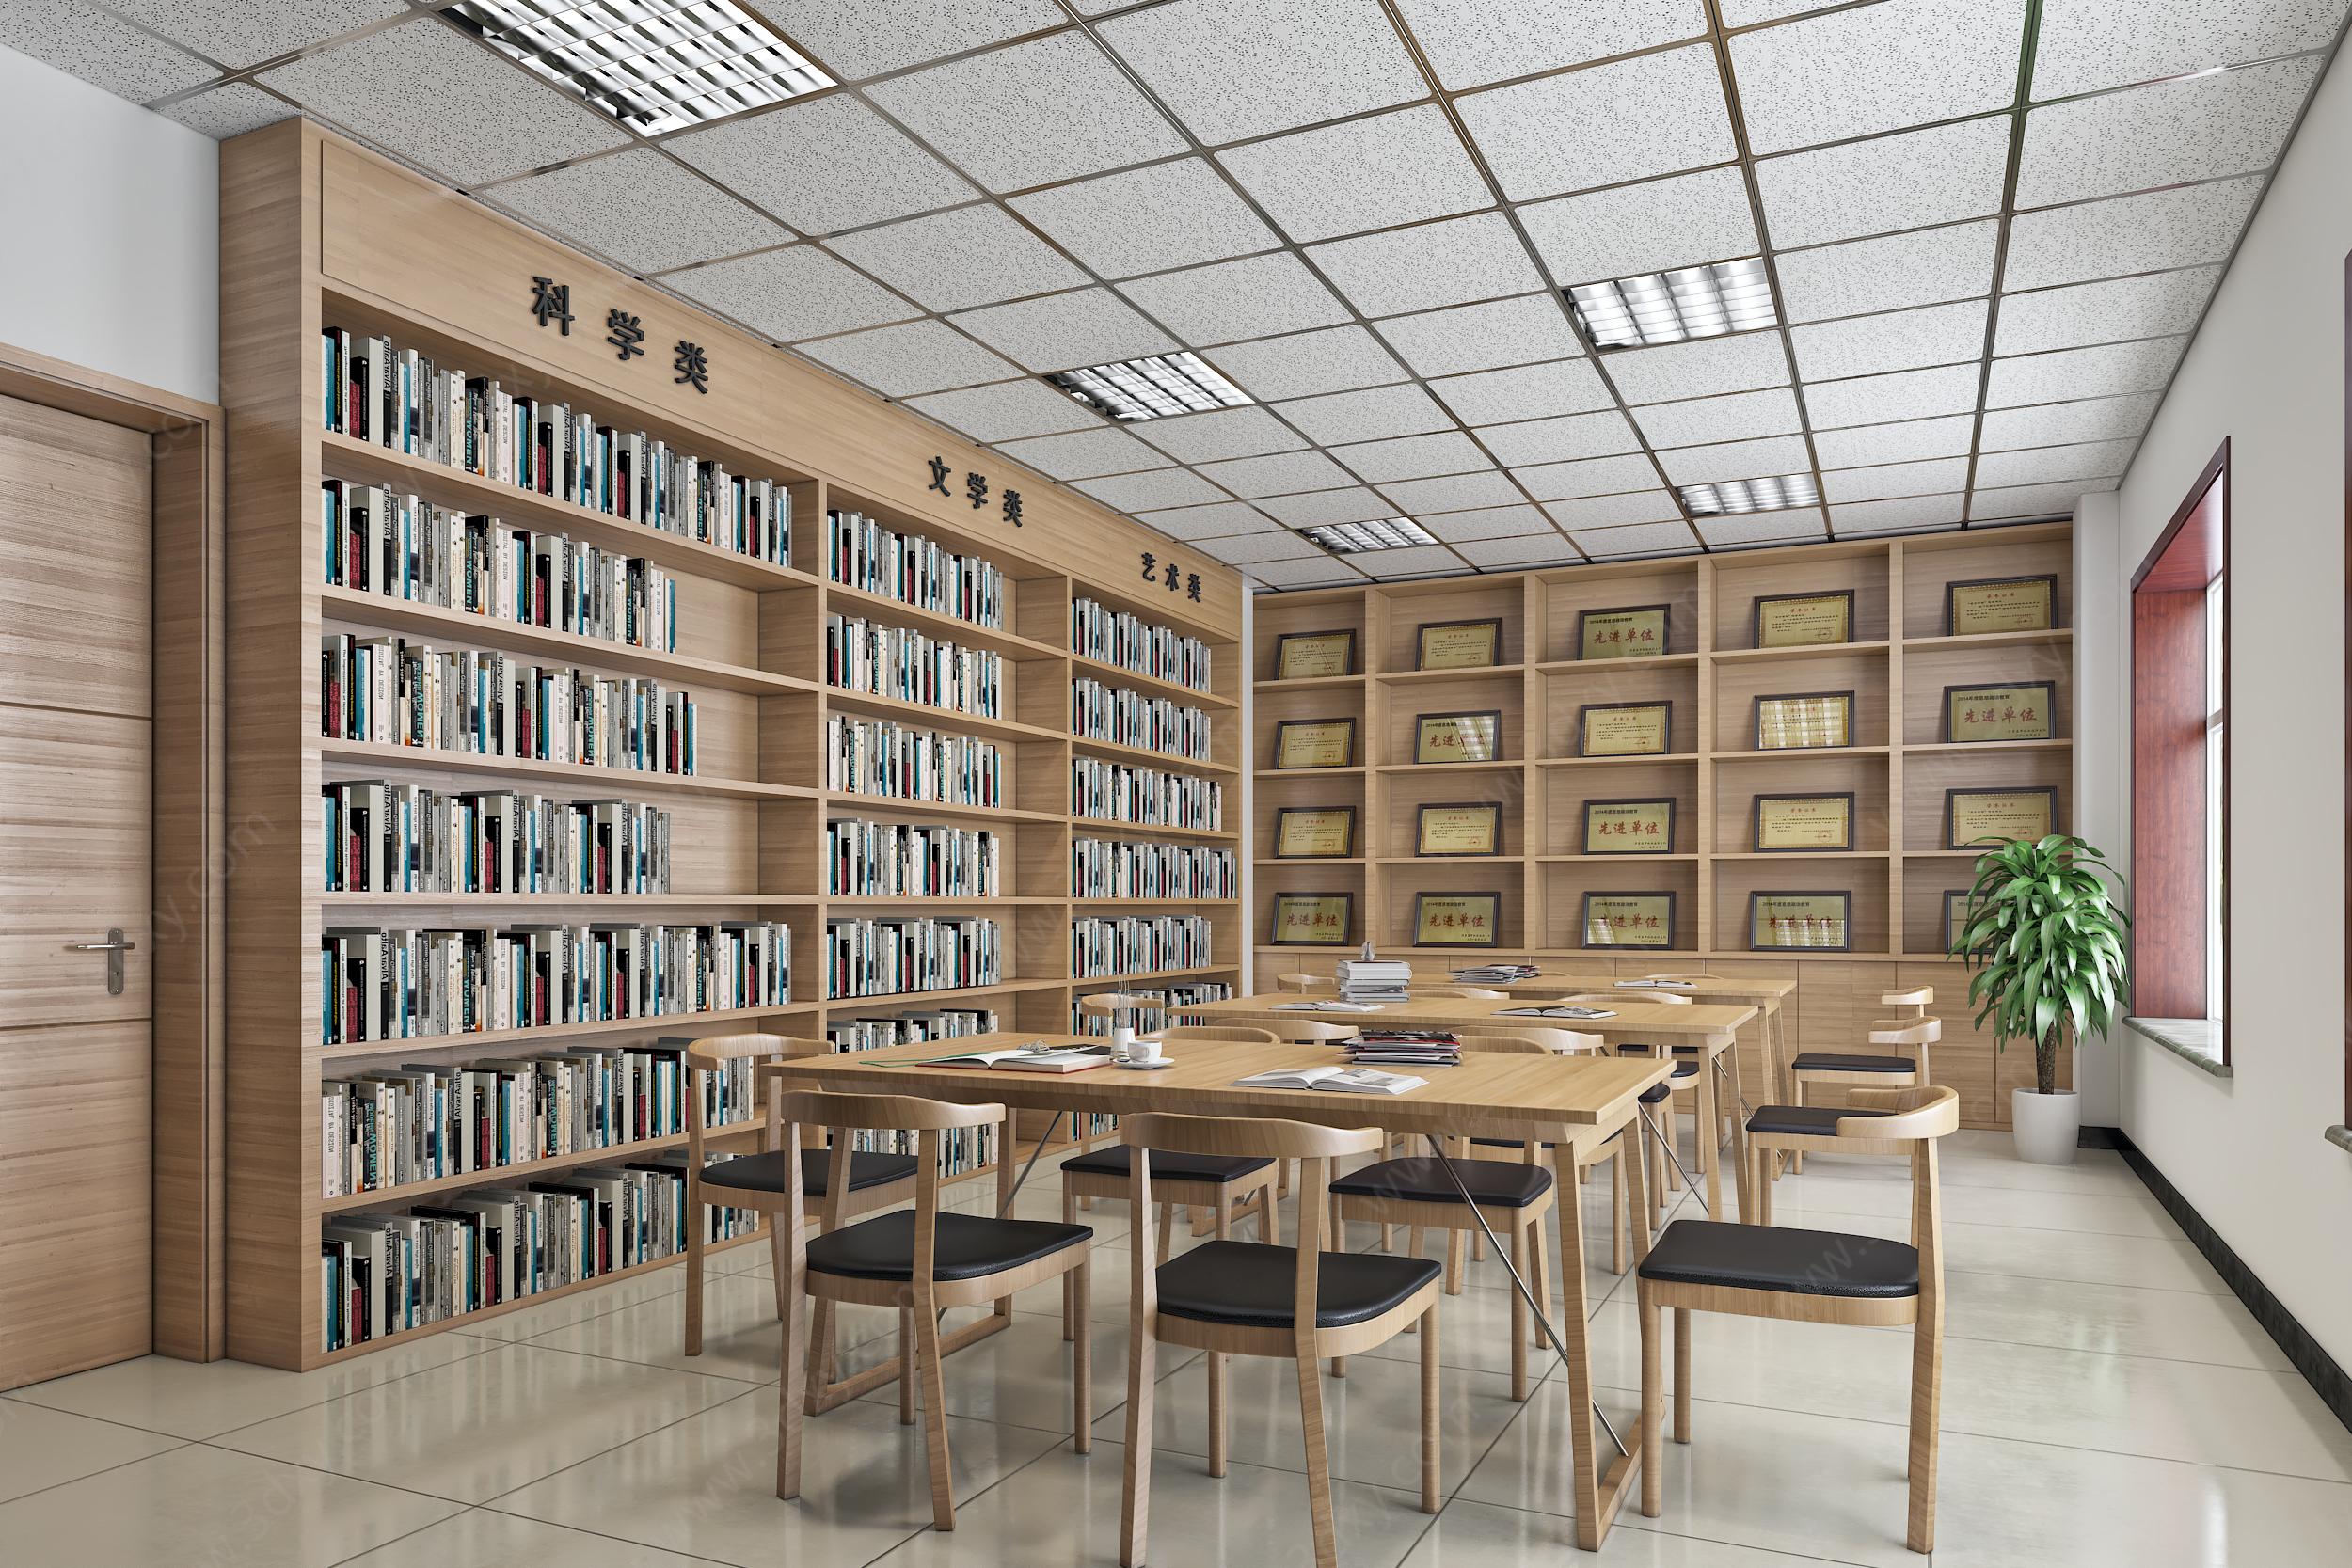 简约新中式阅览室图书馆3D模型